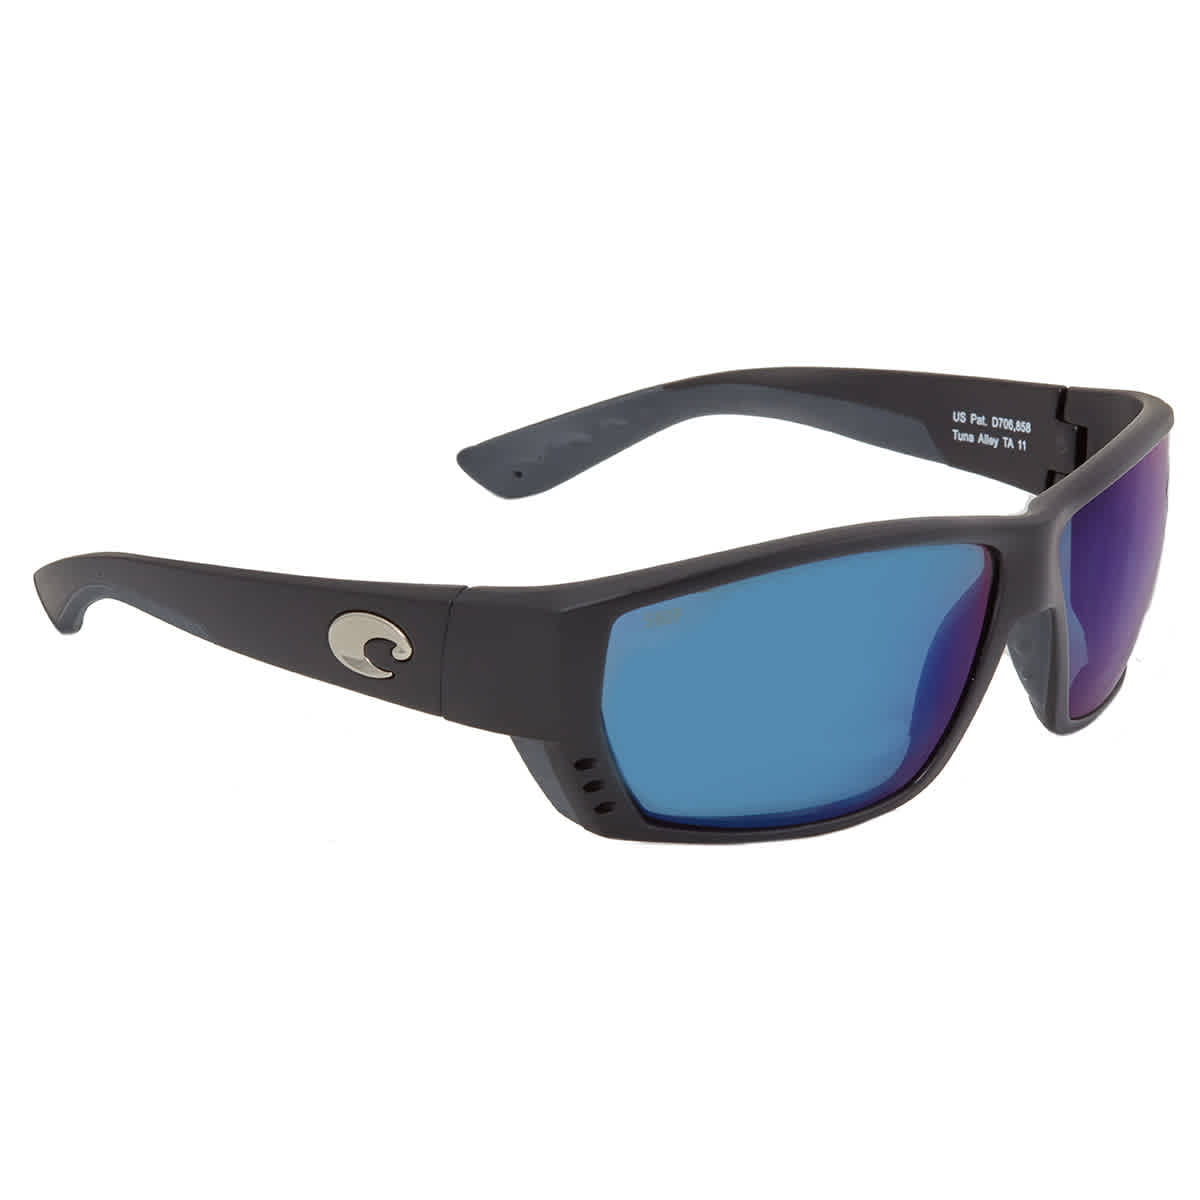 Costa Del Mar Blackfin Sunglasse BL-98-OBMP GreyBlue Mirror 580P Polarized 